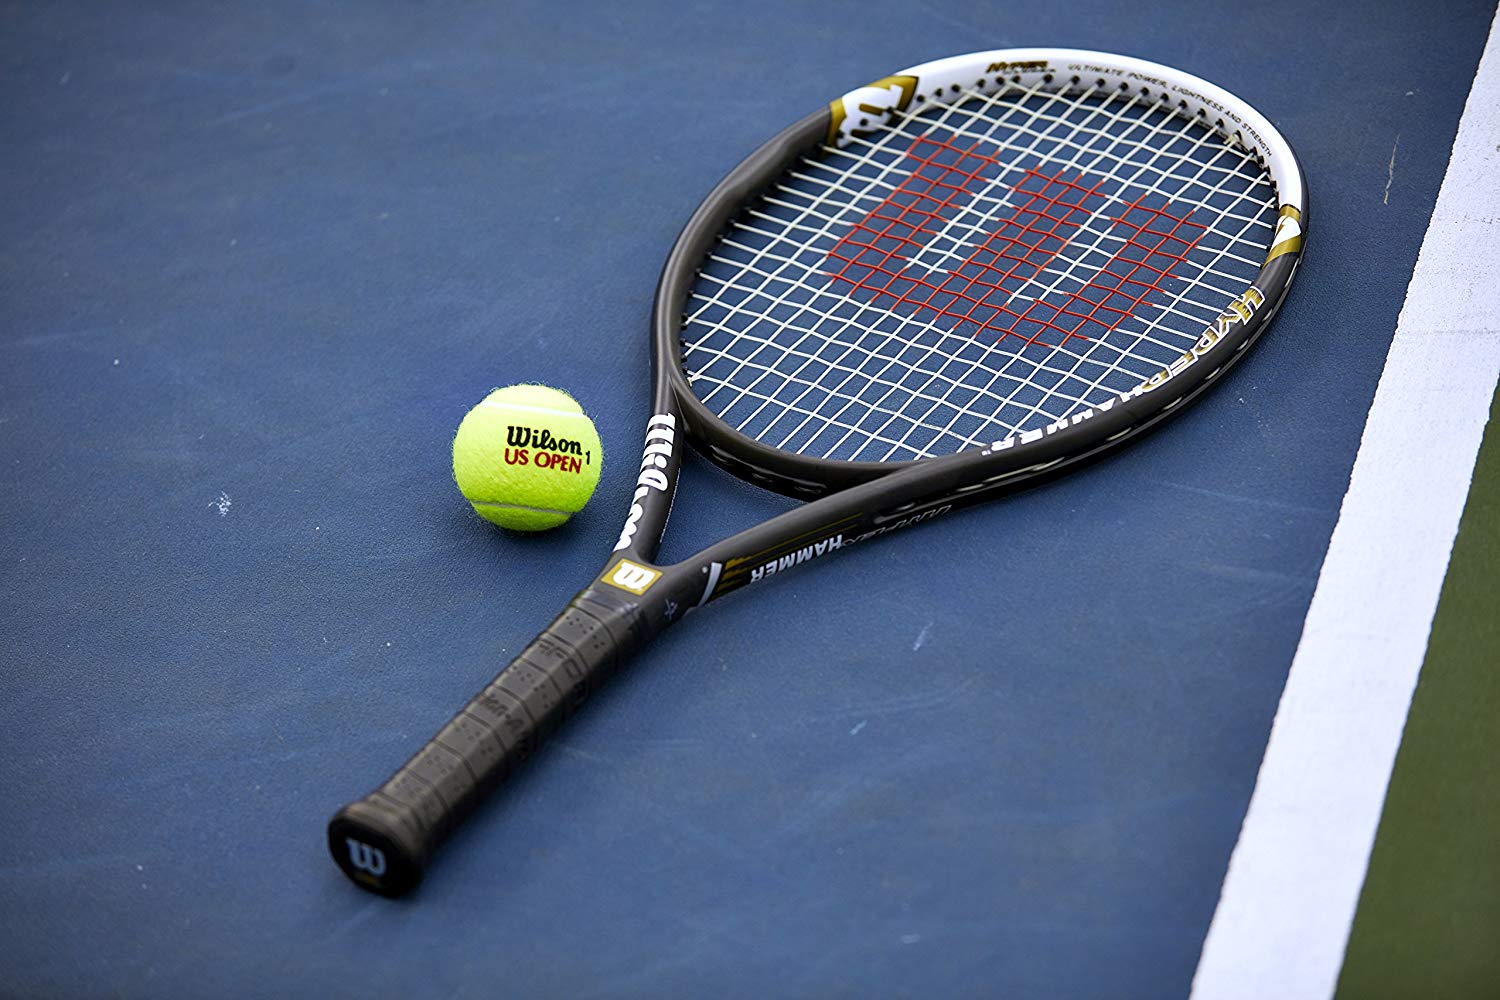 buy-tennis-racket-very-good